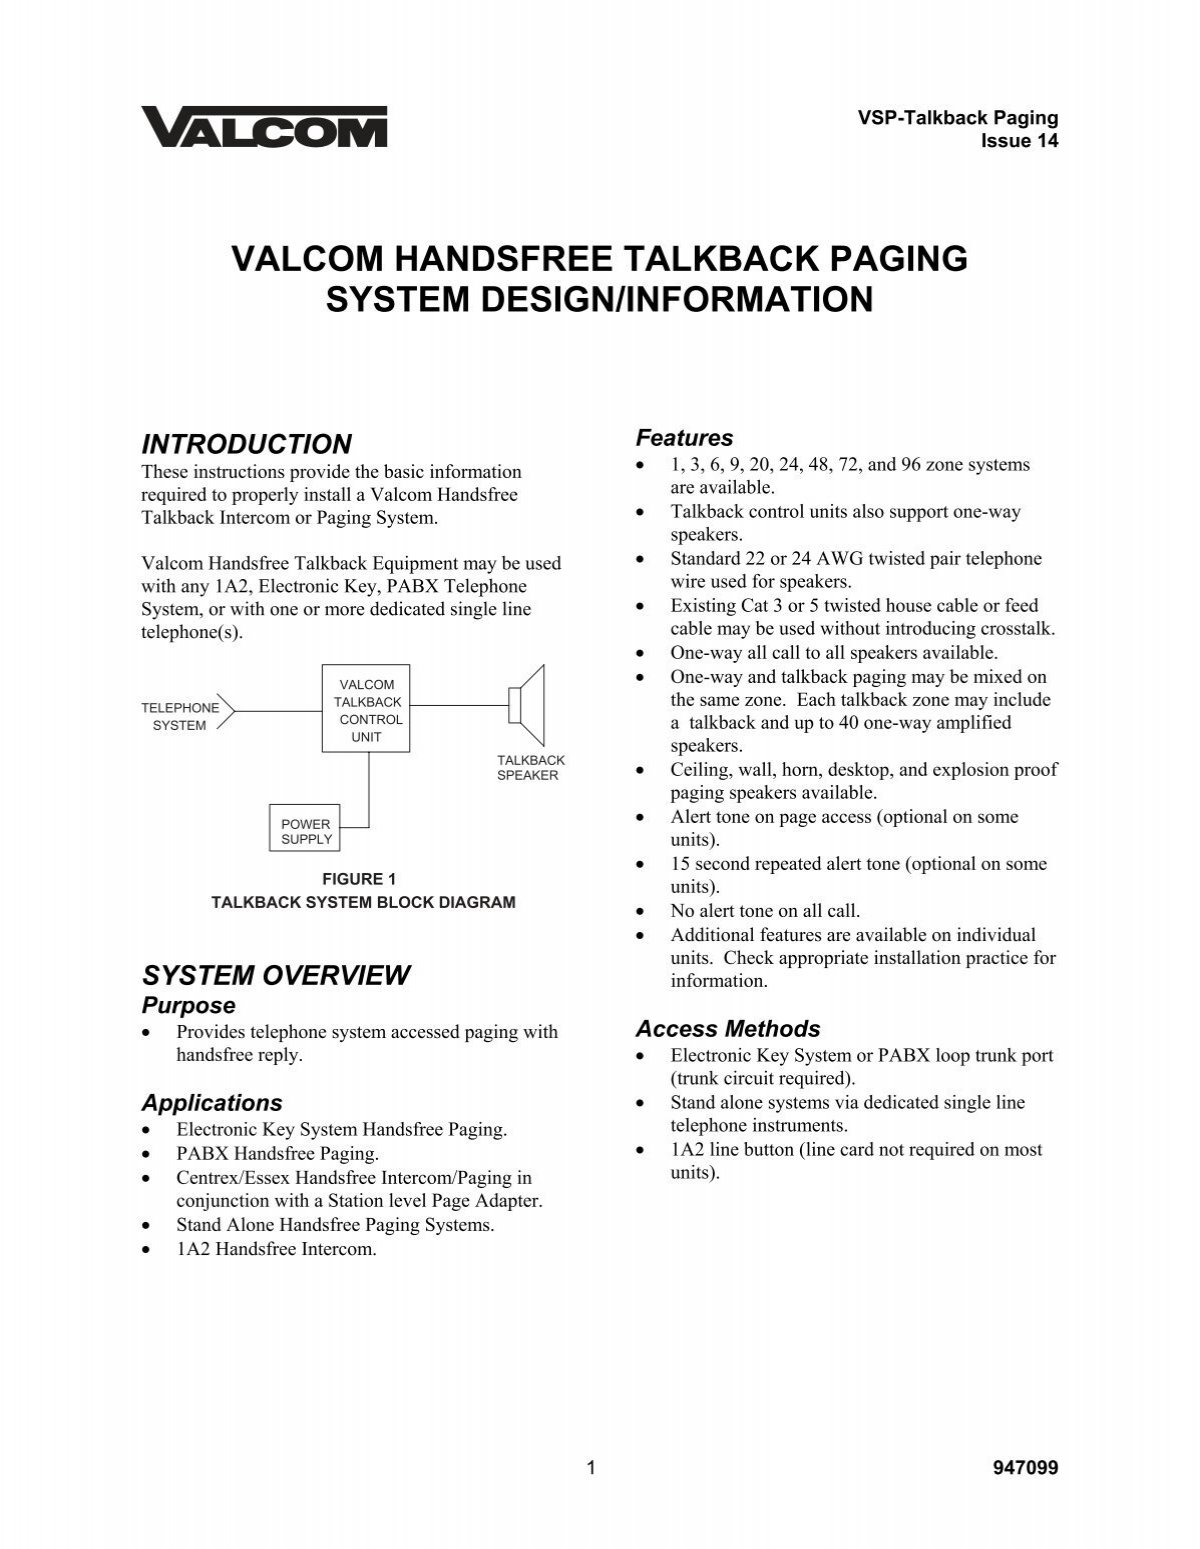 Valcom Handsfree Talkback Paging System Design Information